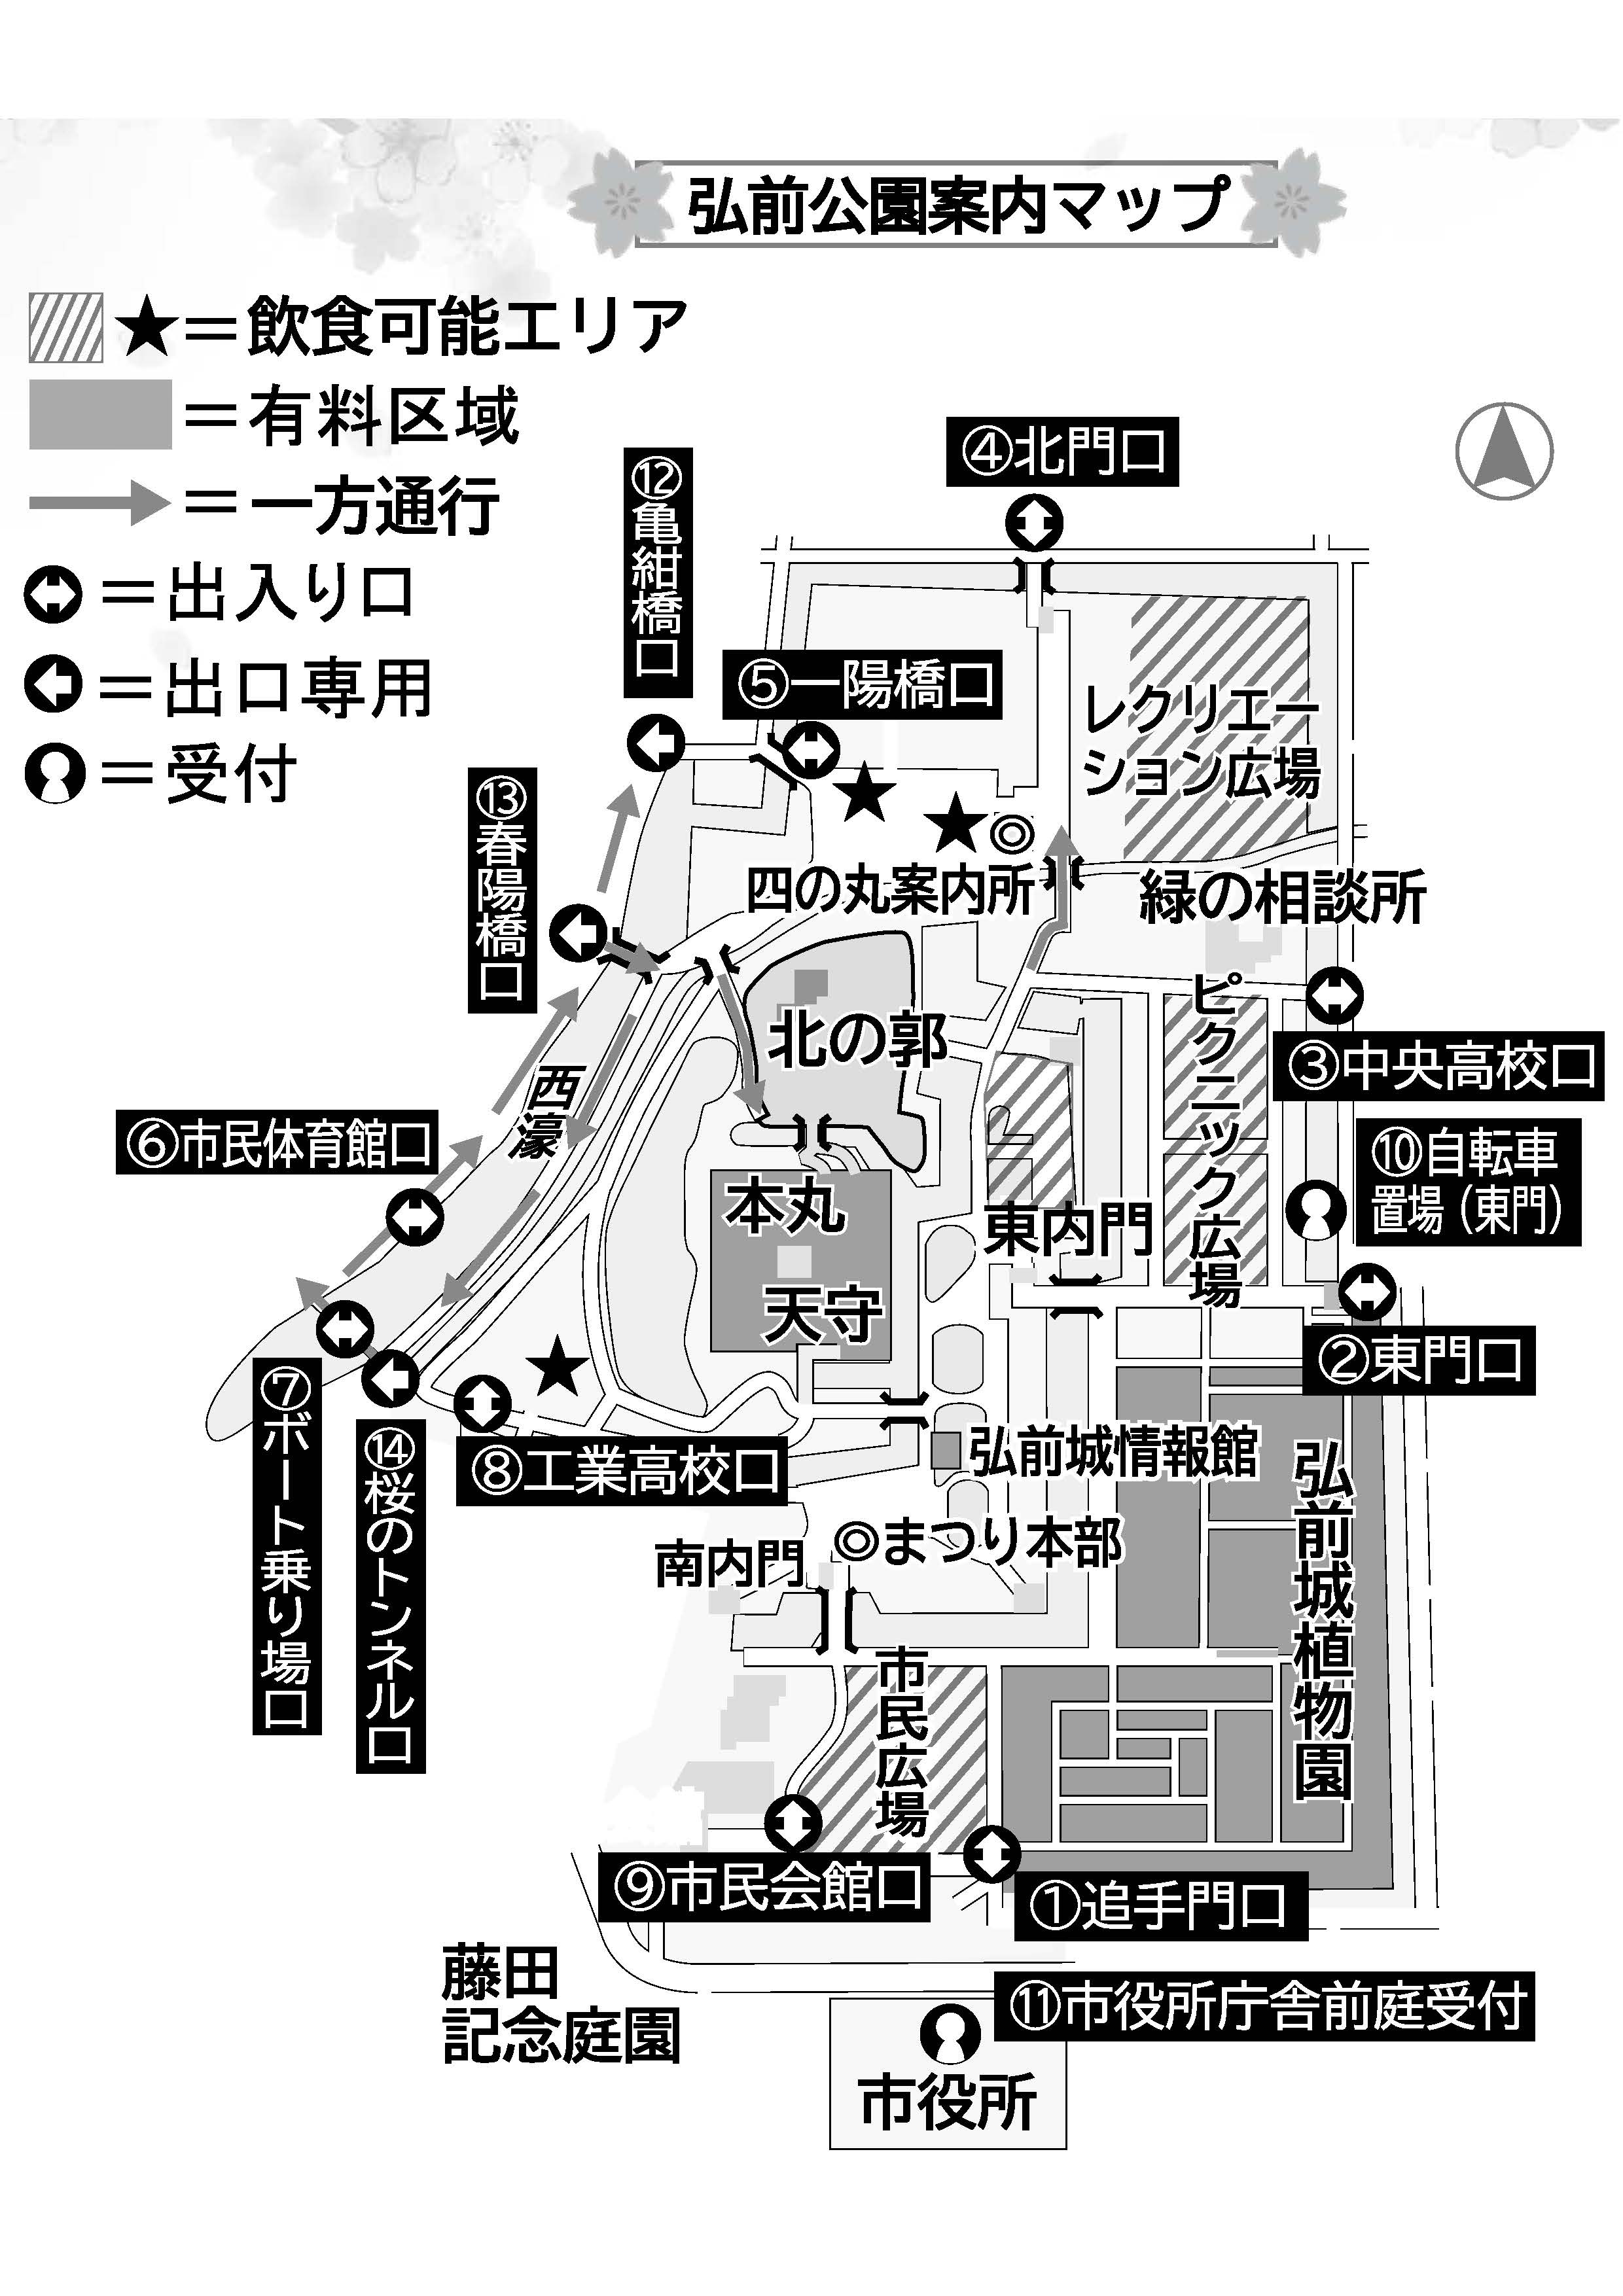 弘前公園さくらまつり2021園内マップ